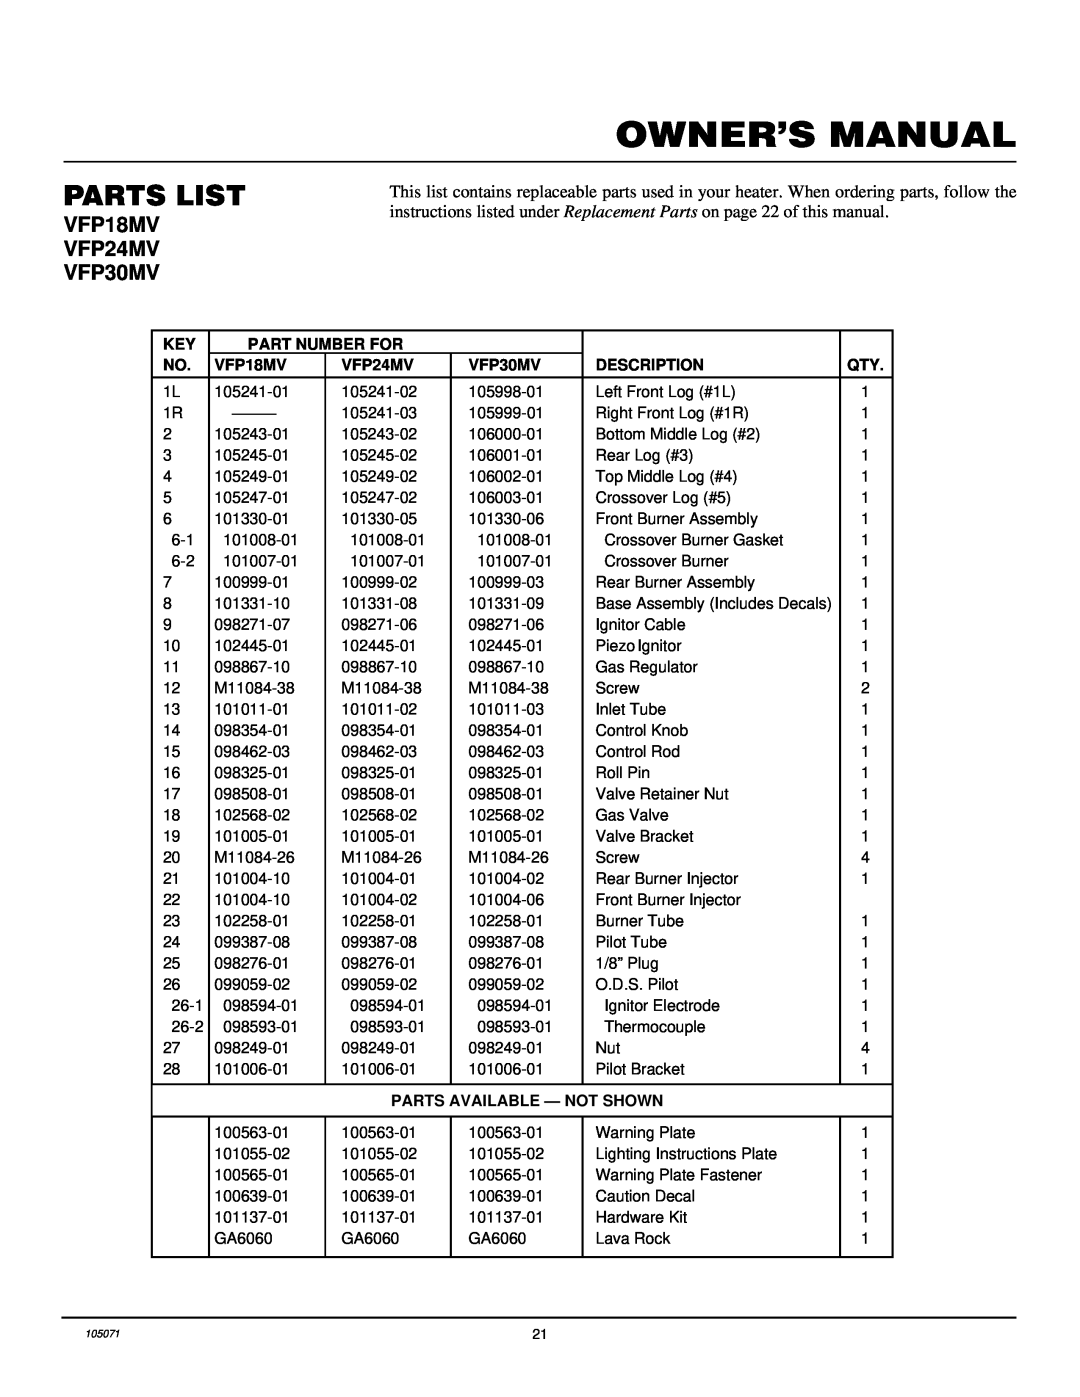 Desa VFP18MV installation manual Parts List, Part Number For, VFP24MV, VFP30MV, Description, Parts Available - Not Shown 